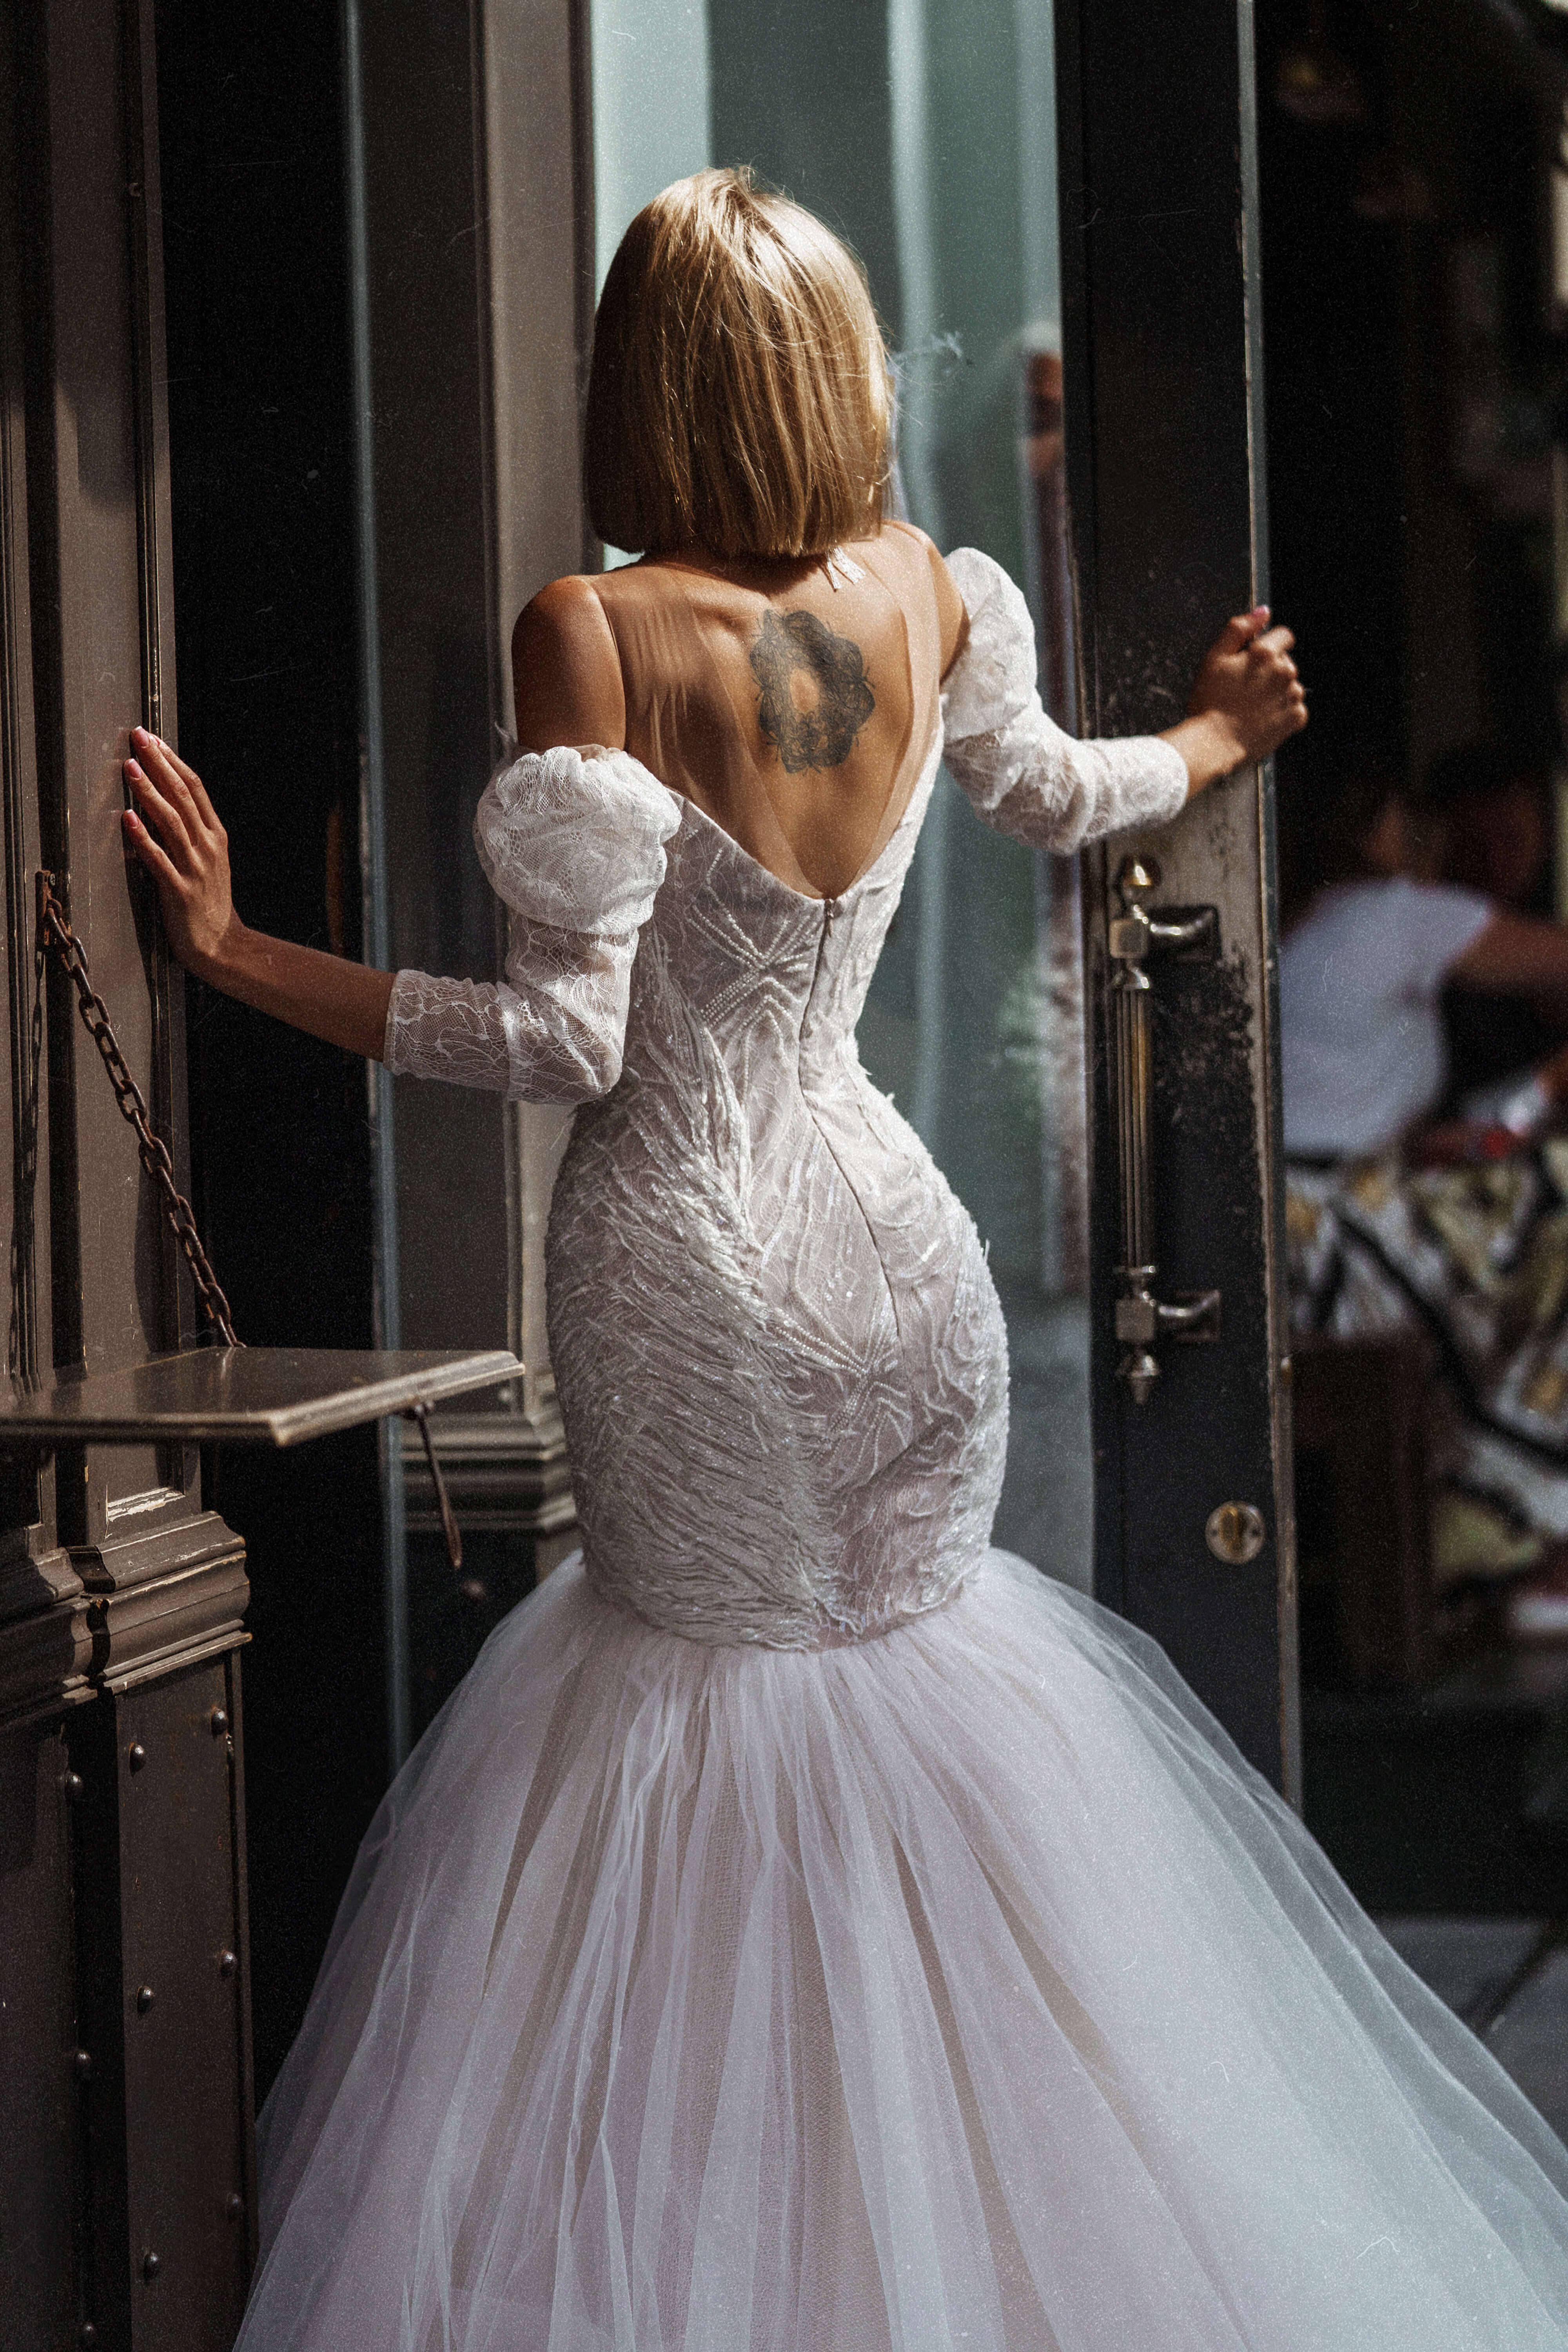 Купить свадебное платье «Арлит» Рара Авис из коллекции О Май Брайд 2021 года в интернет-магазине